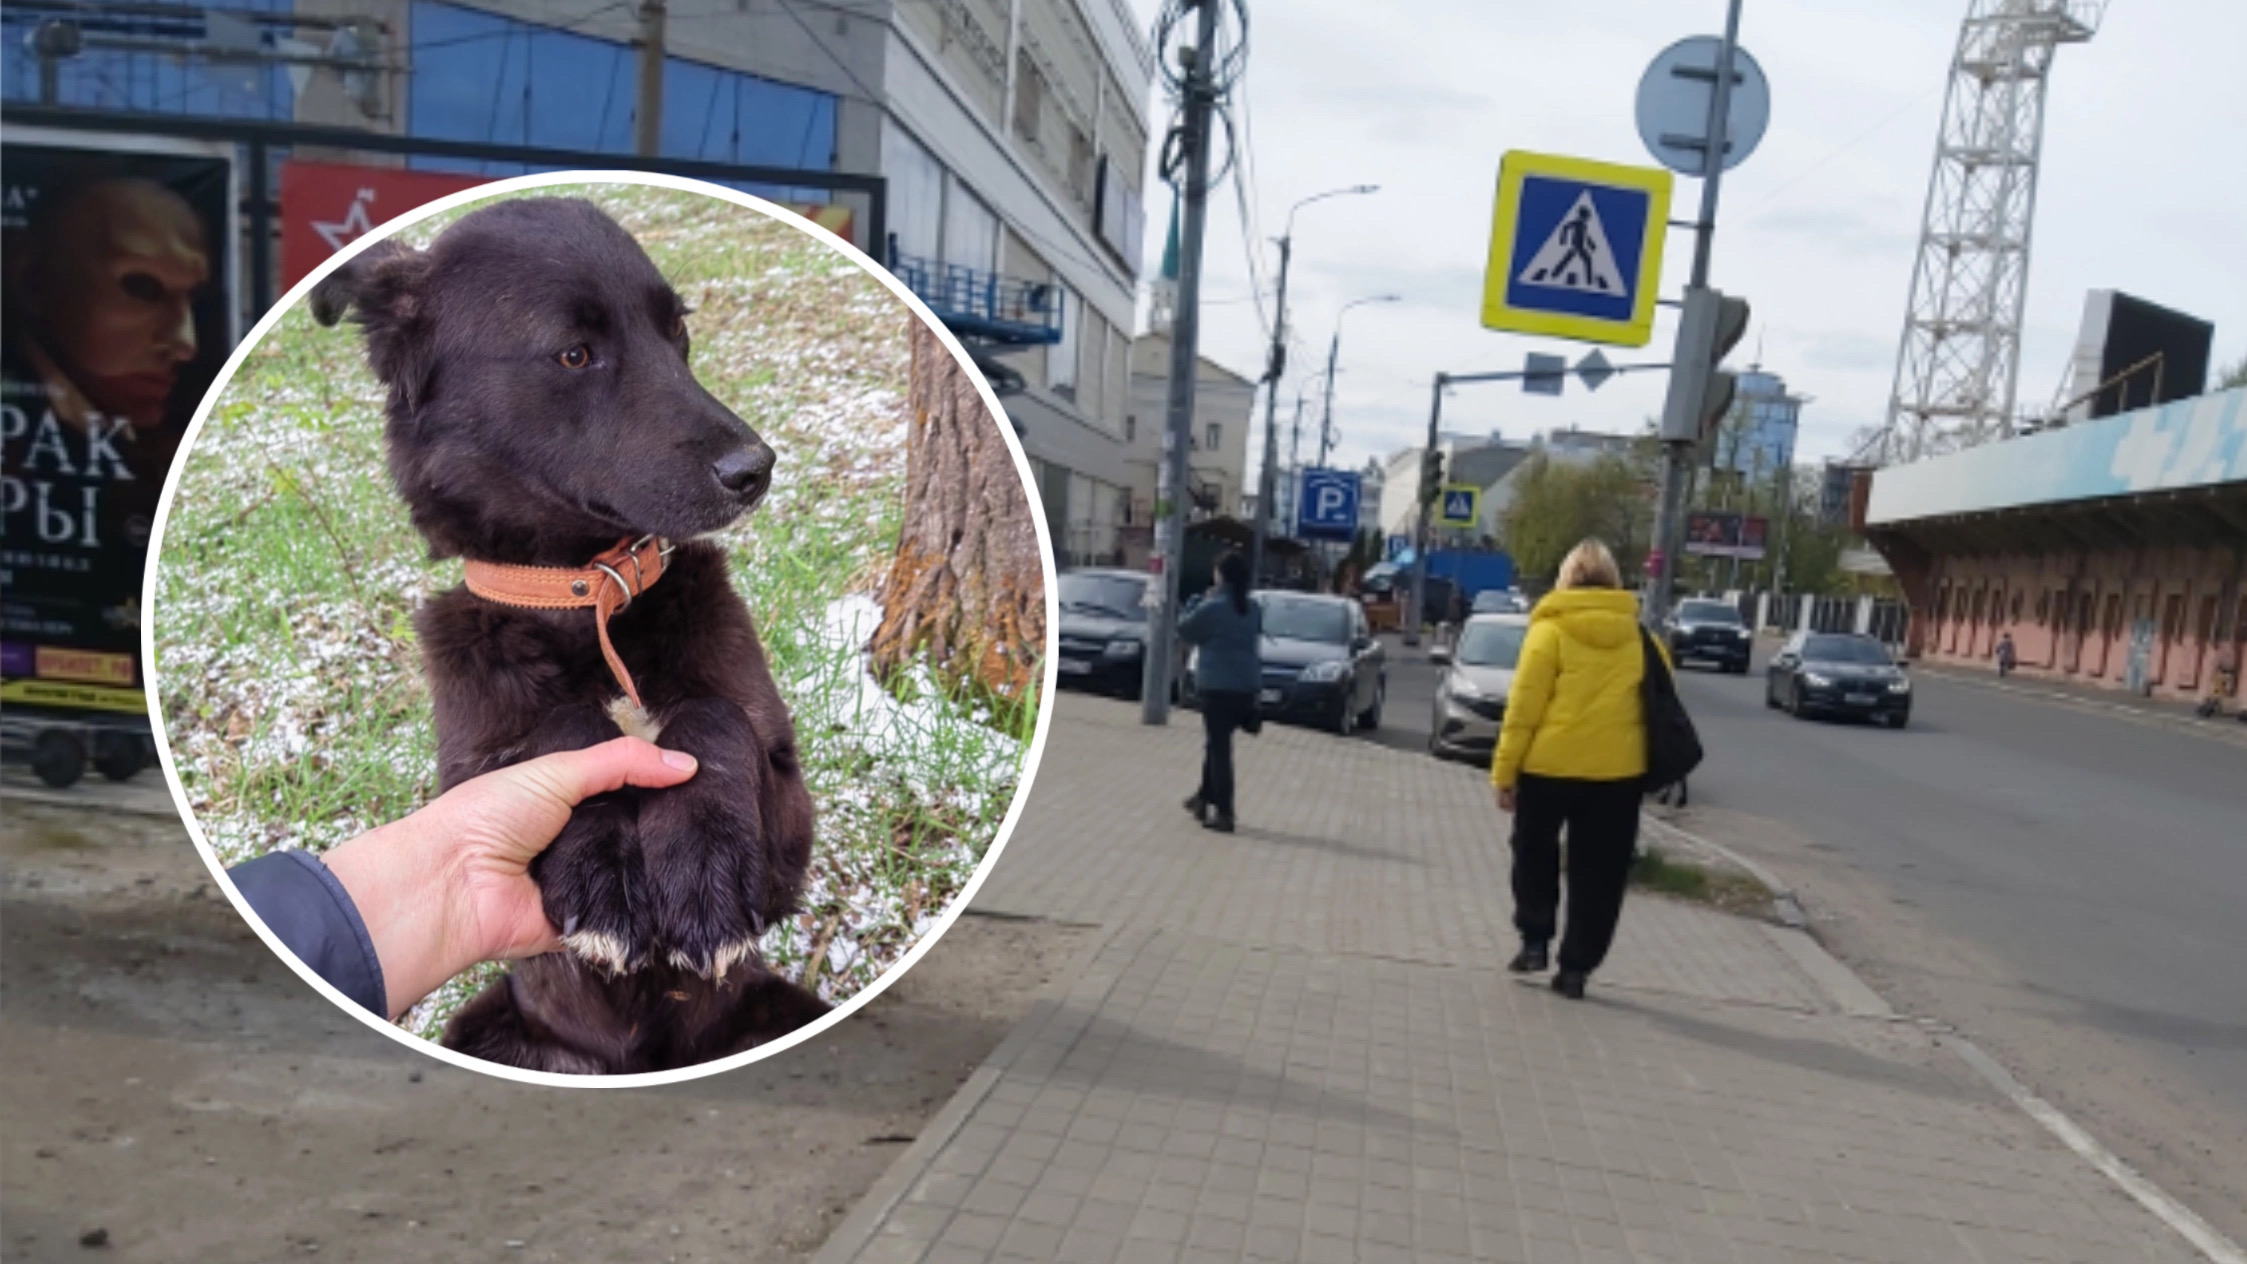 В Ярославской области с щенка сняли 88 клещей